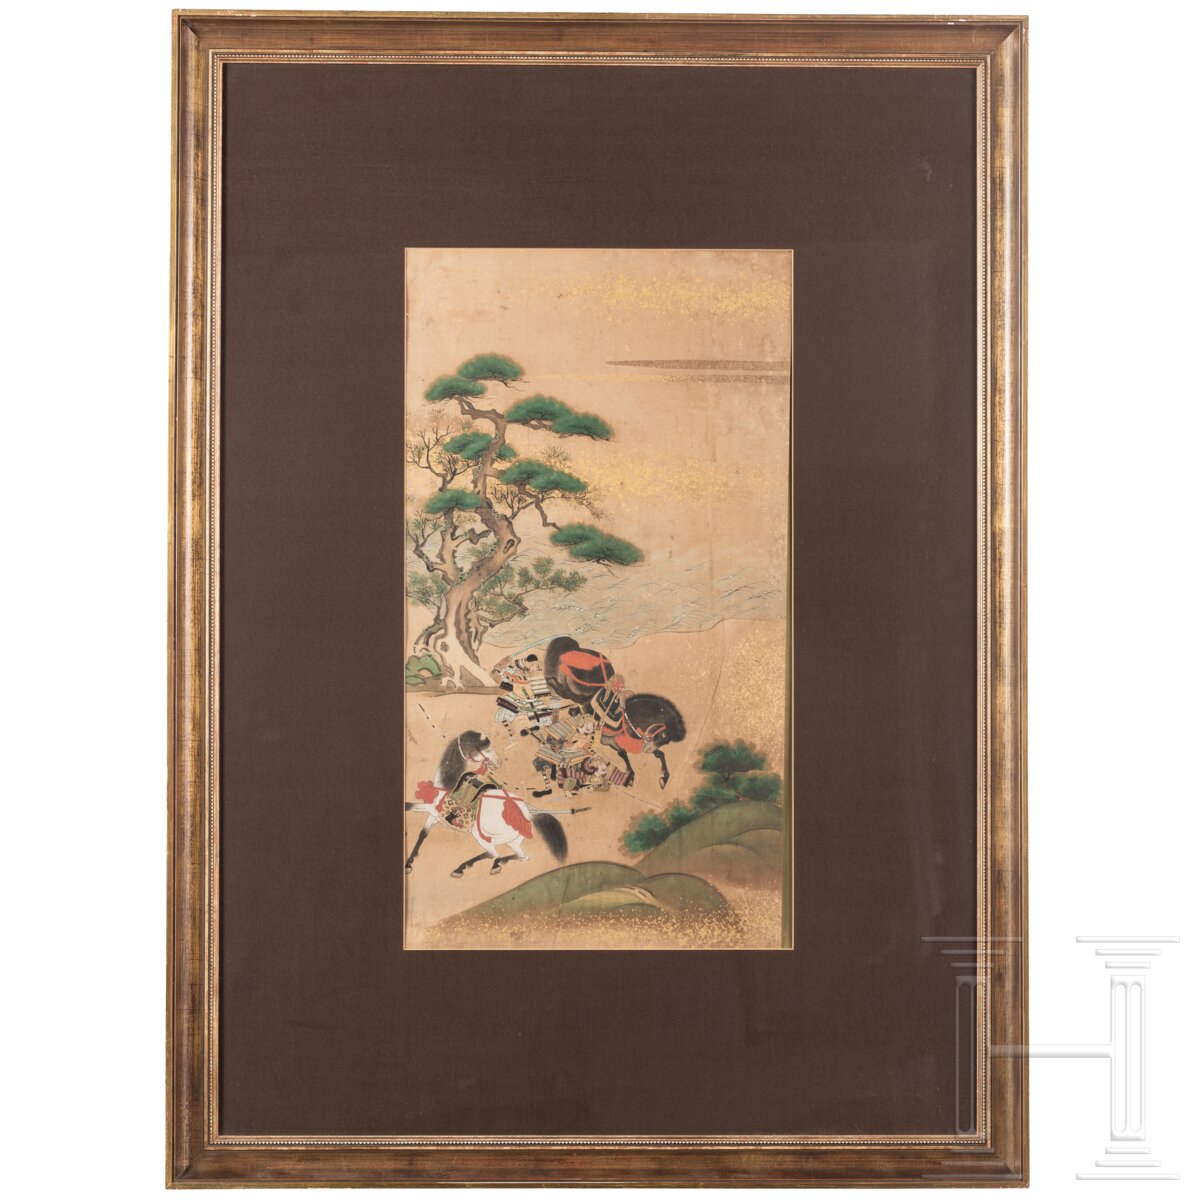 Entköpfung eines Samurai, Rimpa-Blattgoldmalerei, Japan, Edo-/Meiji-Periode